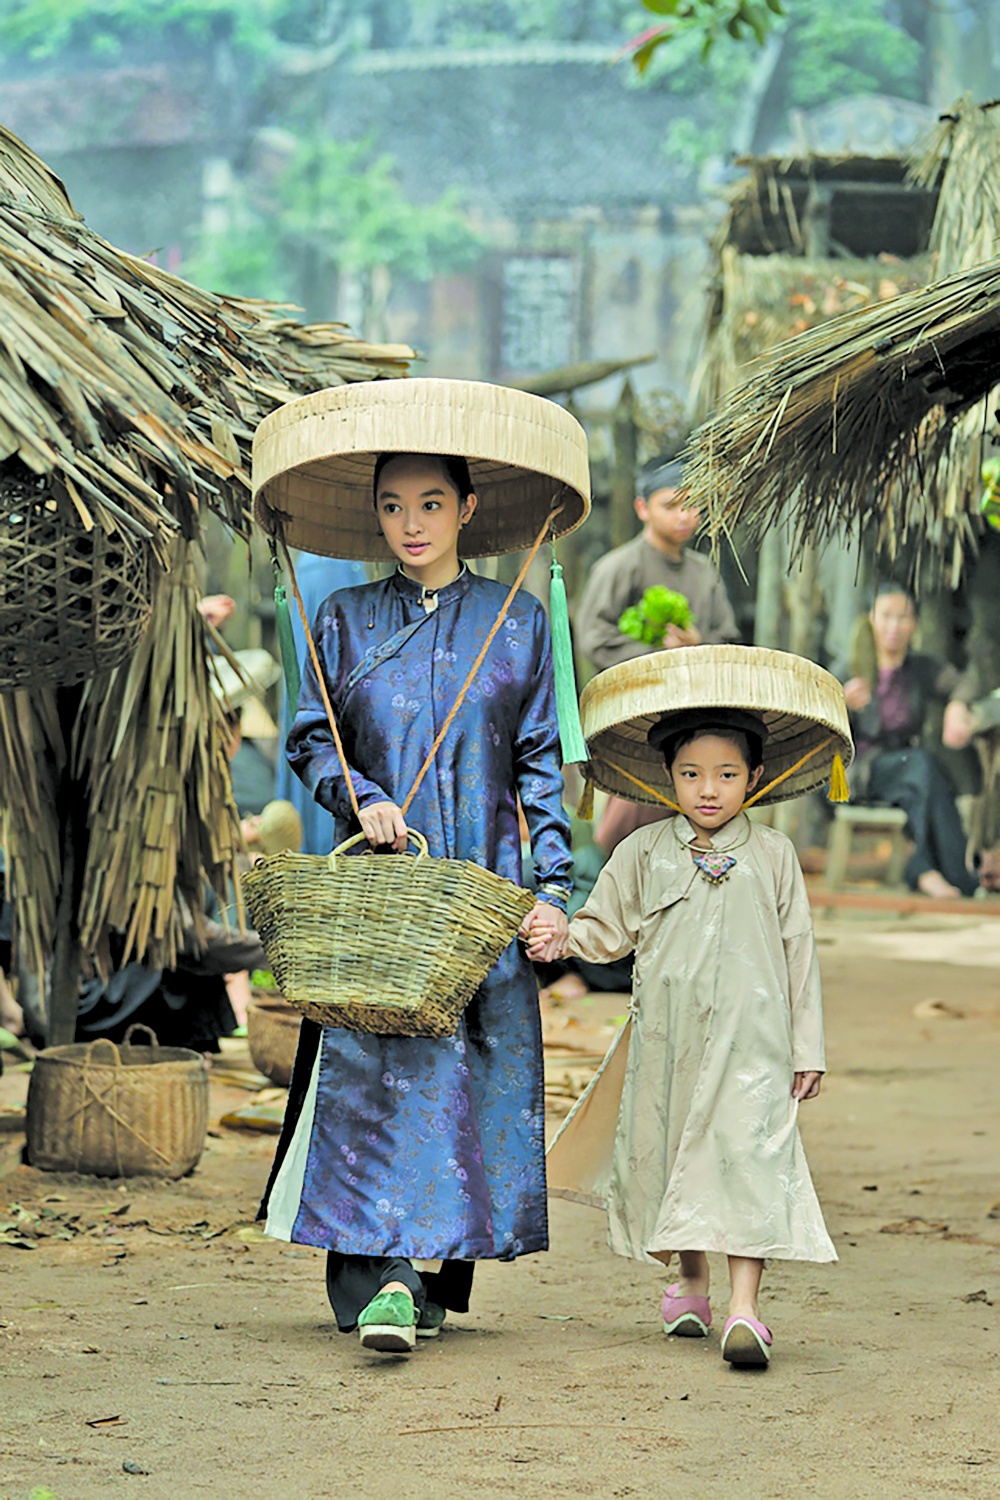 Diễn viên Kaity Nguyễn hóa thân thành phụ nữ miền Bắc đầu thế kỷ 19 trong phim “Người vợ cuối cùng”, ra rạp vào 3/11 tới